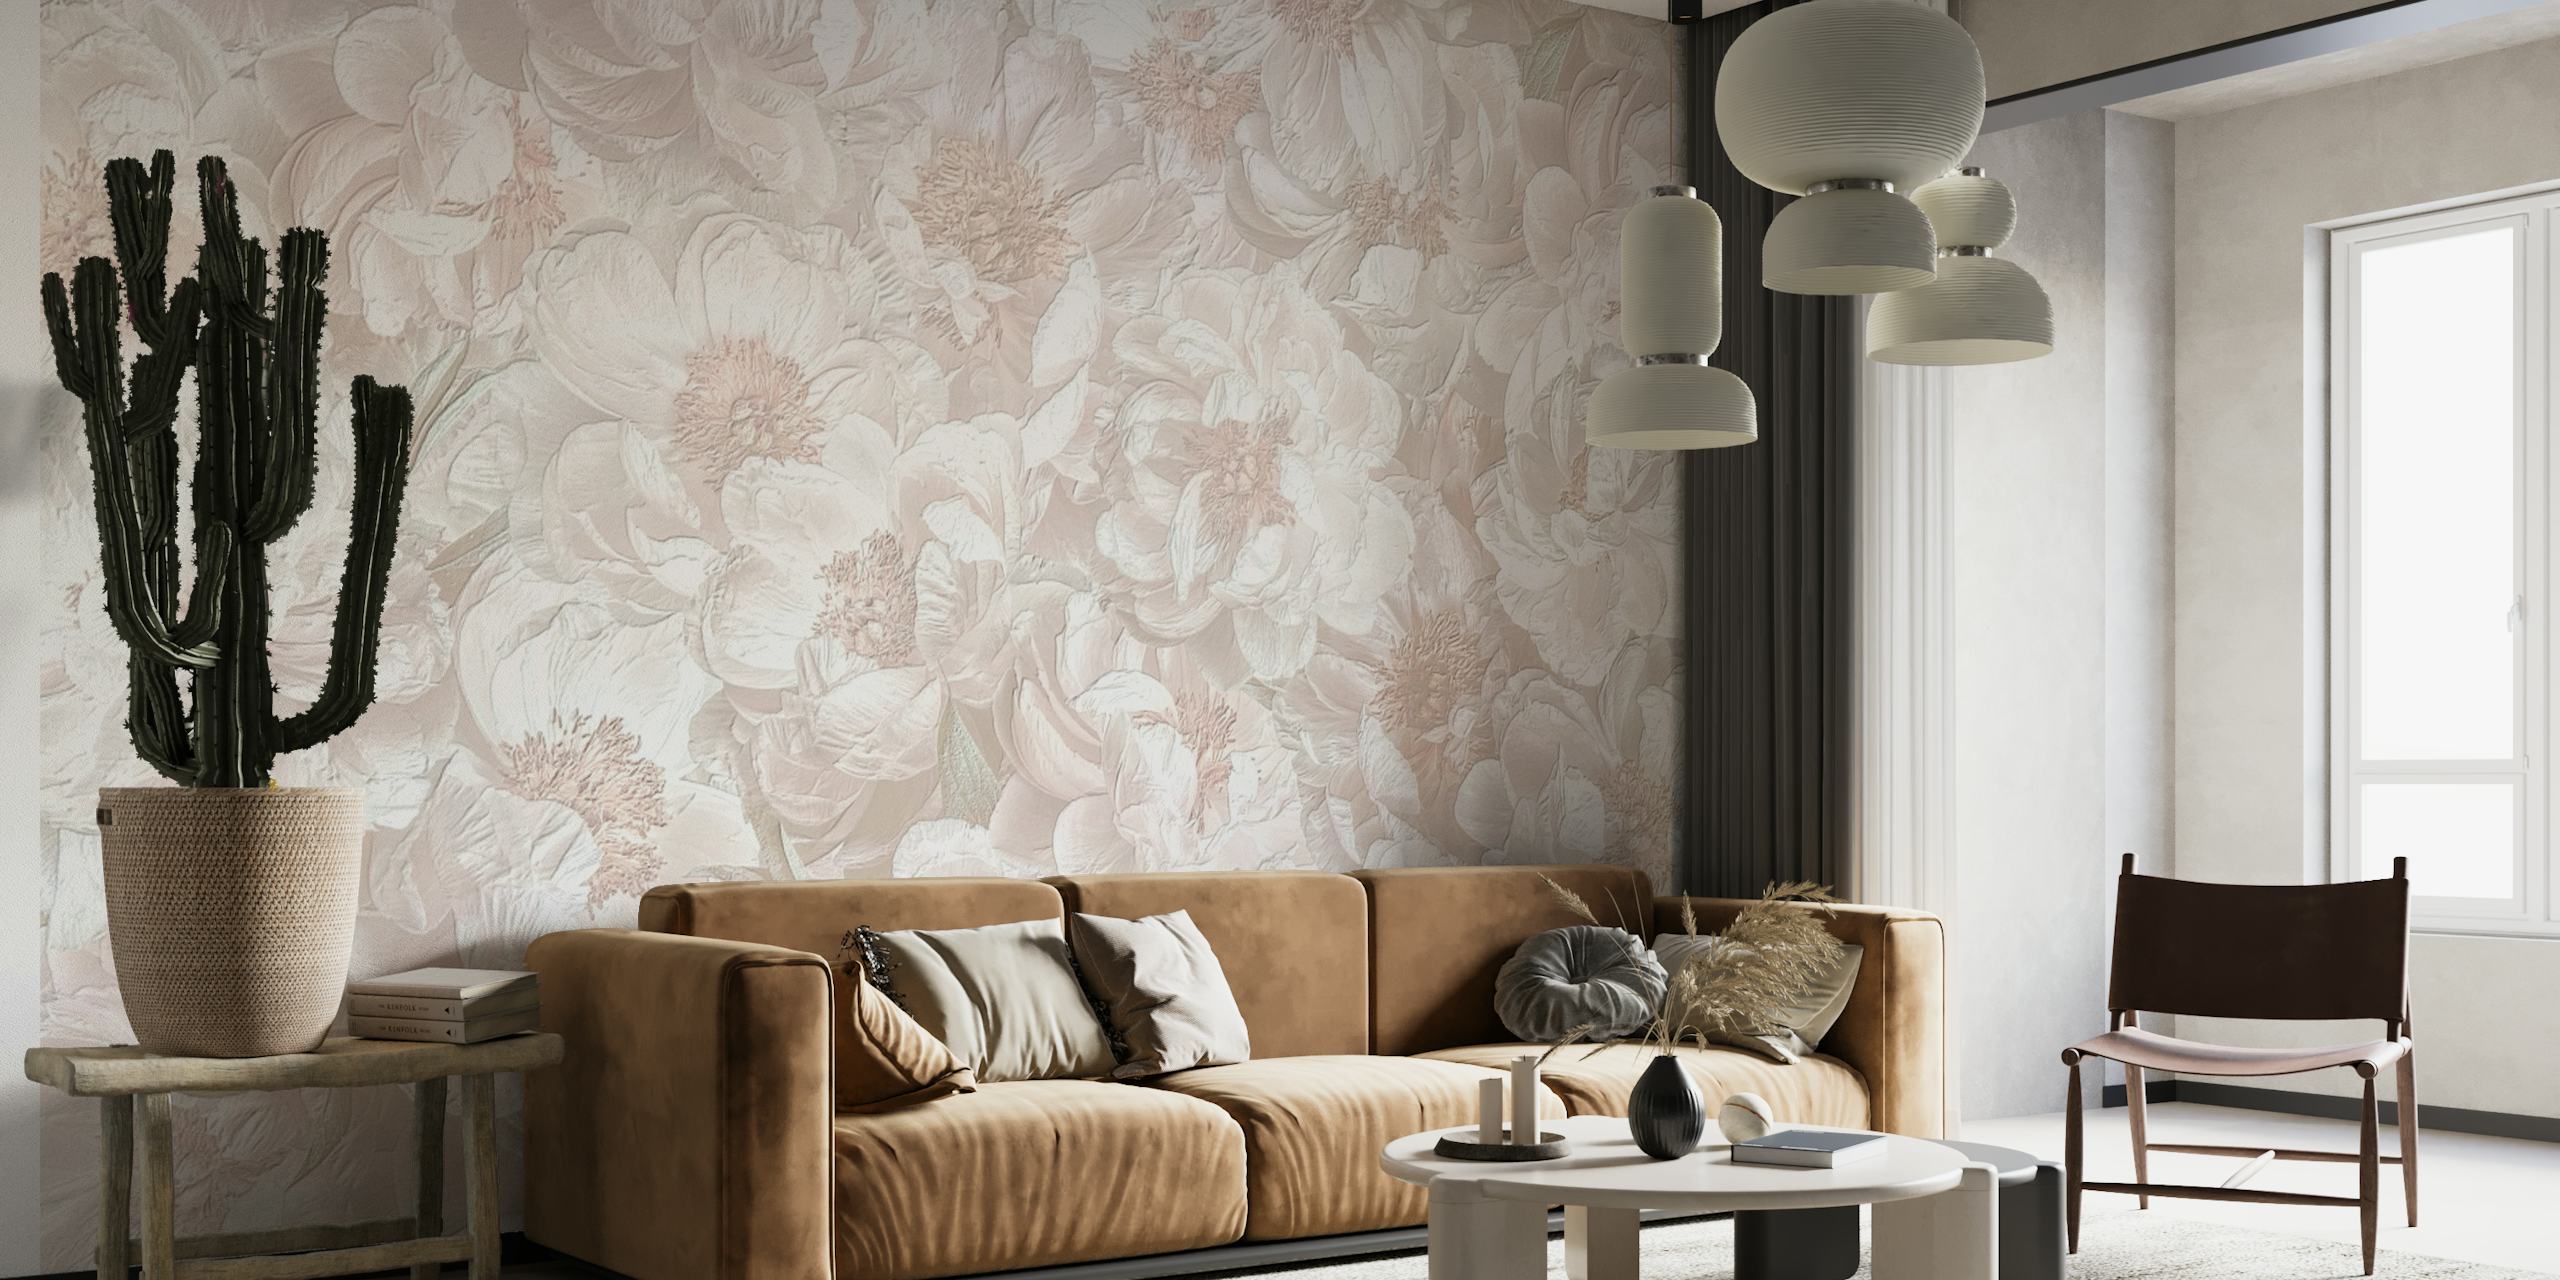 Elegant white flowers design wall mural for calming home decor